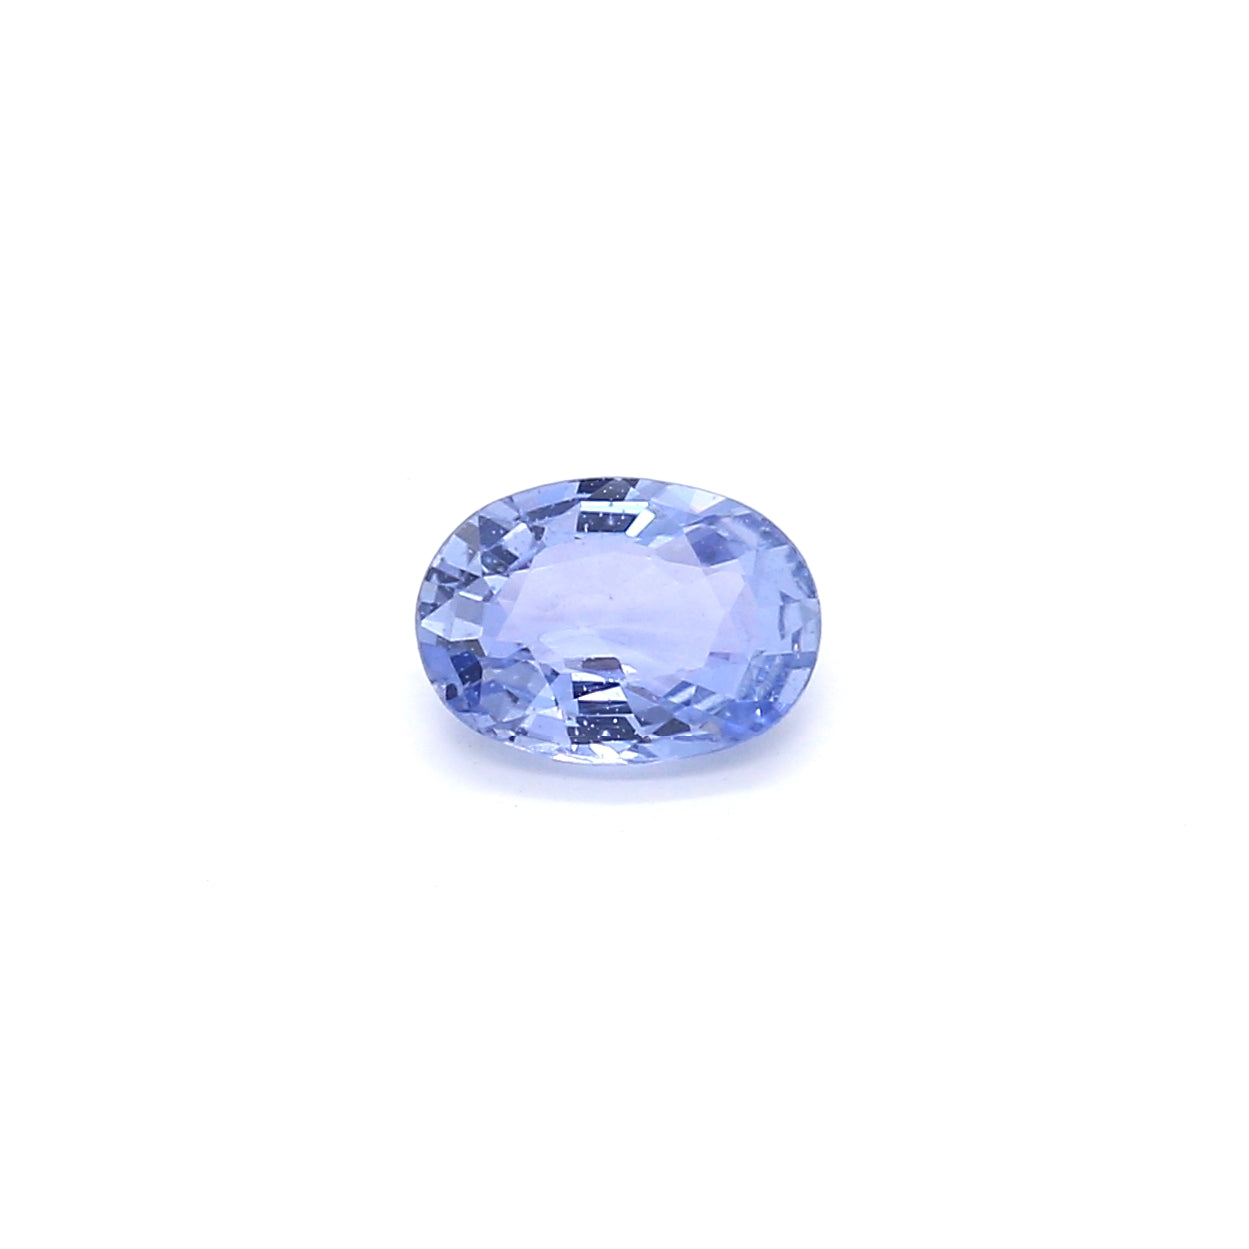 0.87ct Purplish Blue, Oval Sapphire, Heated, Sri Lanka - 7.09 x 5.11 x 2.78mm